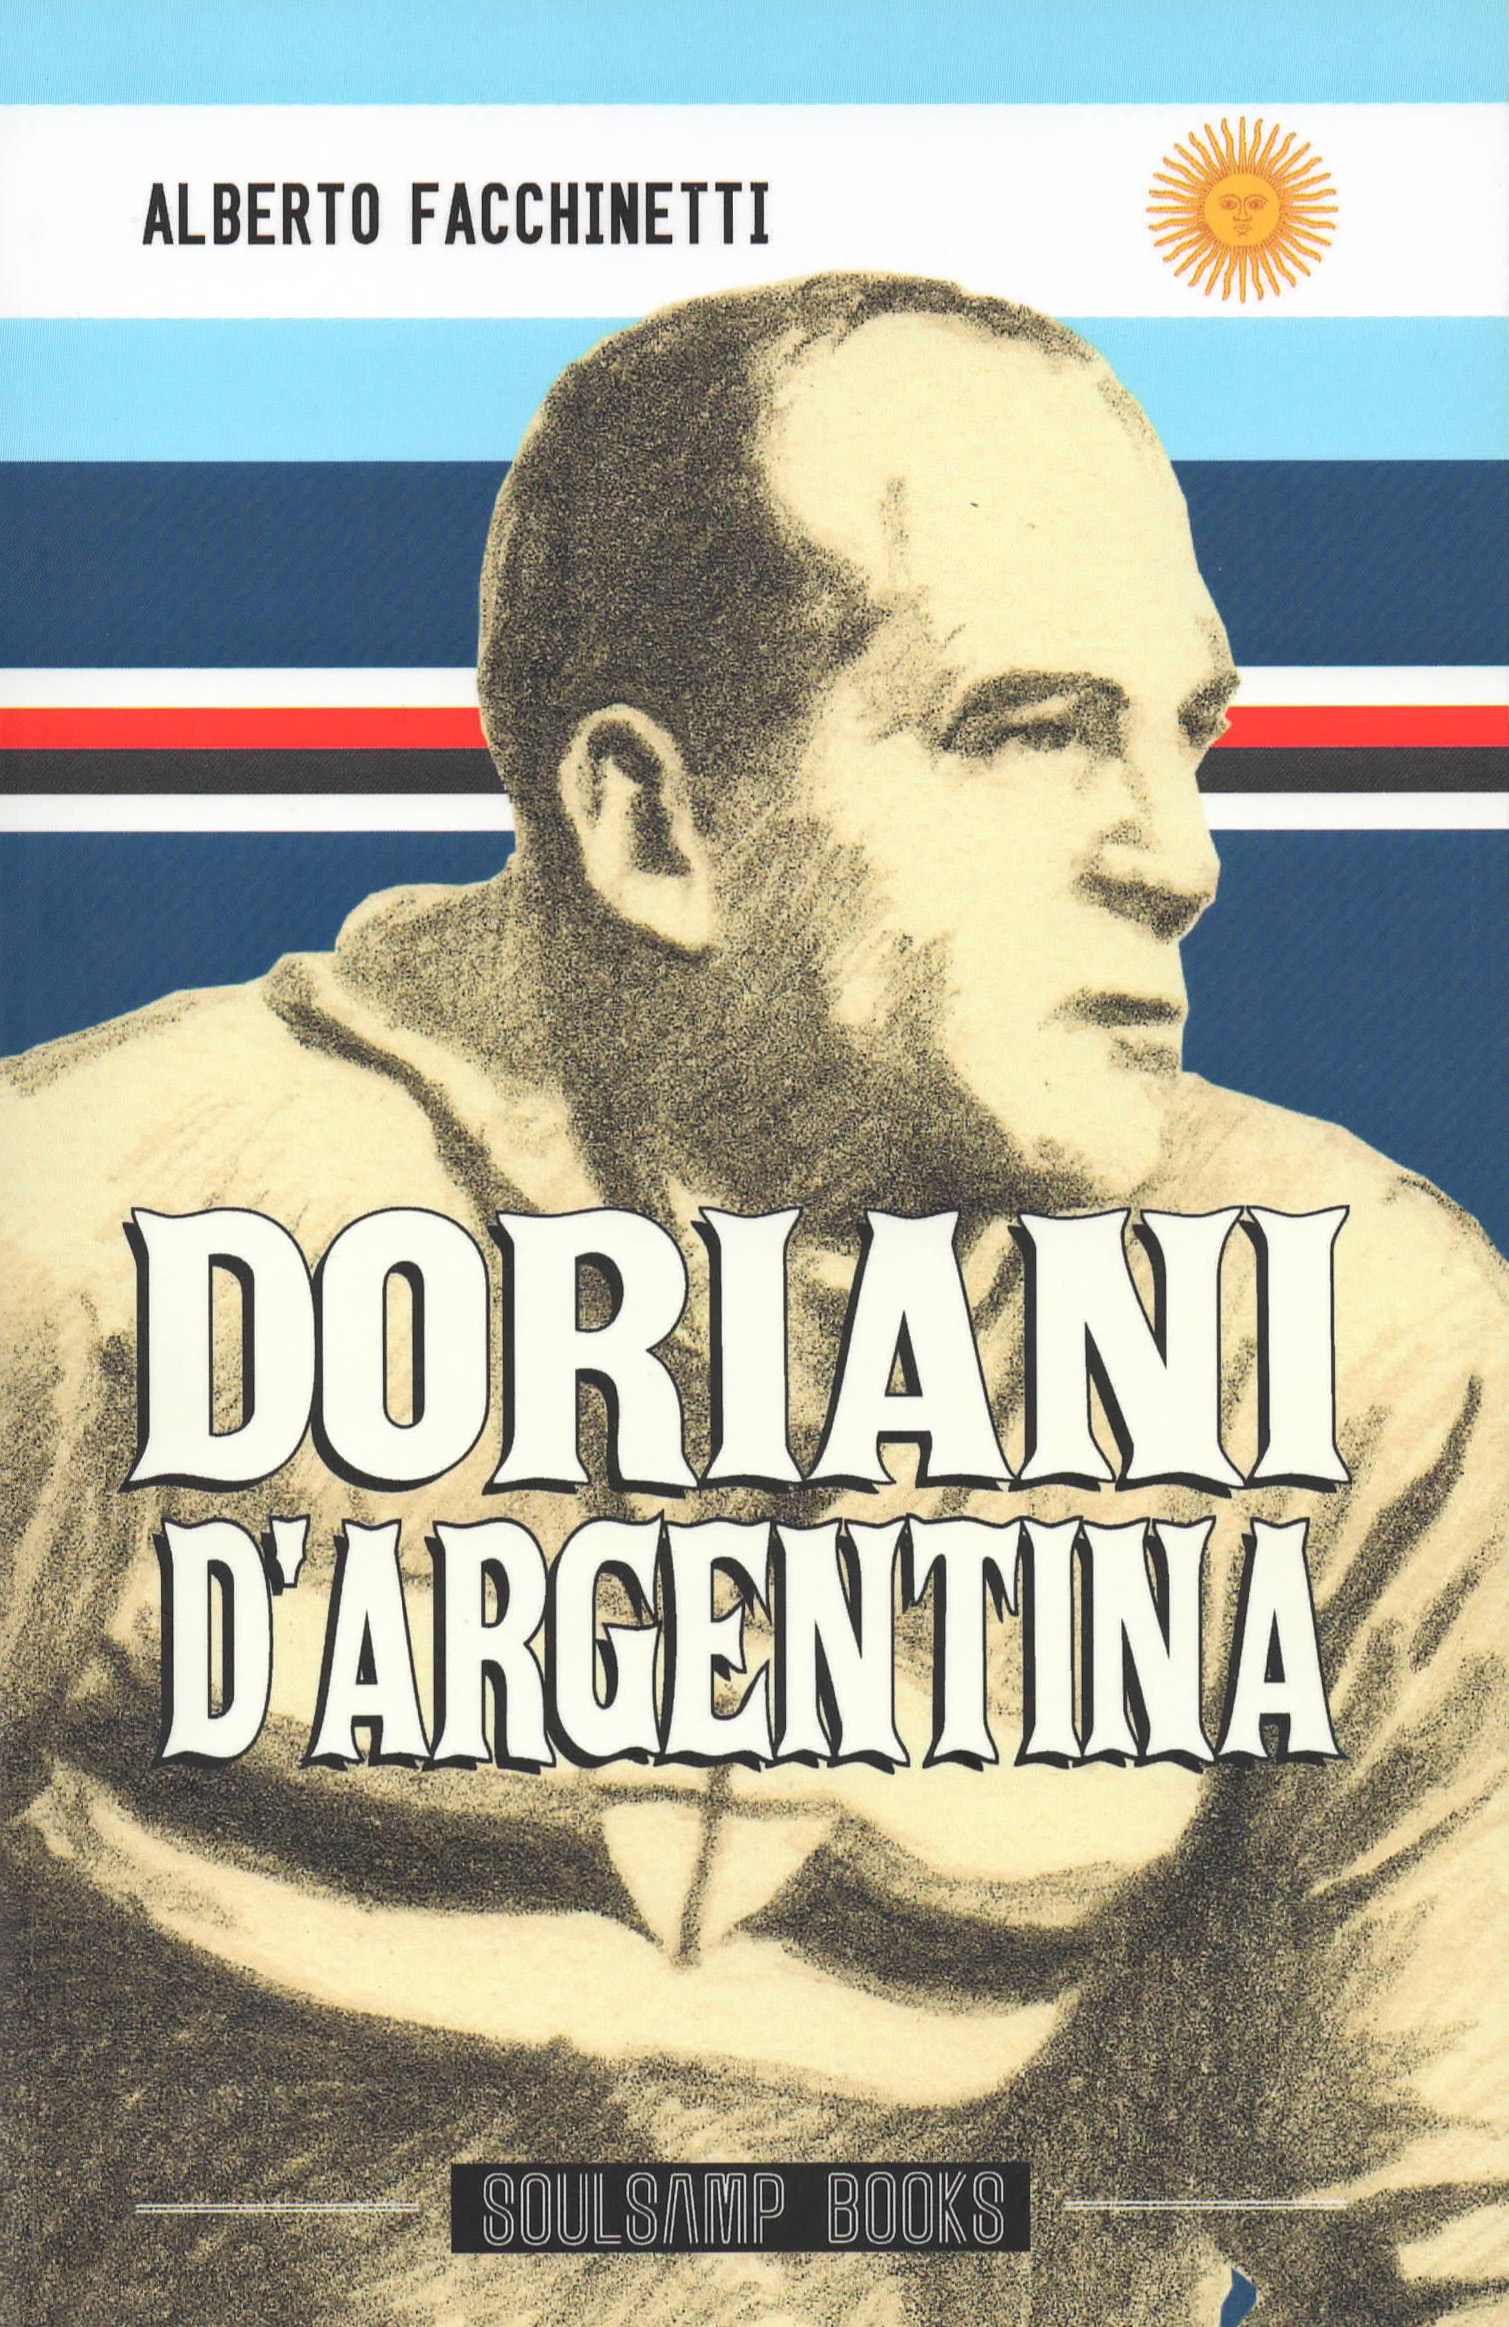 2013 - Cover of 'Doriani d'Argentina' by Alberto Facchinetti, SoulSamp Book